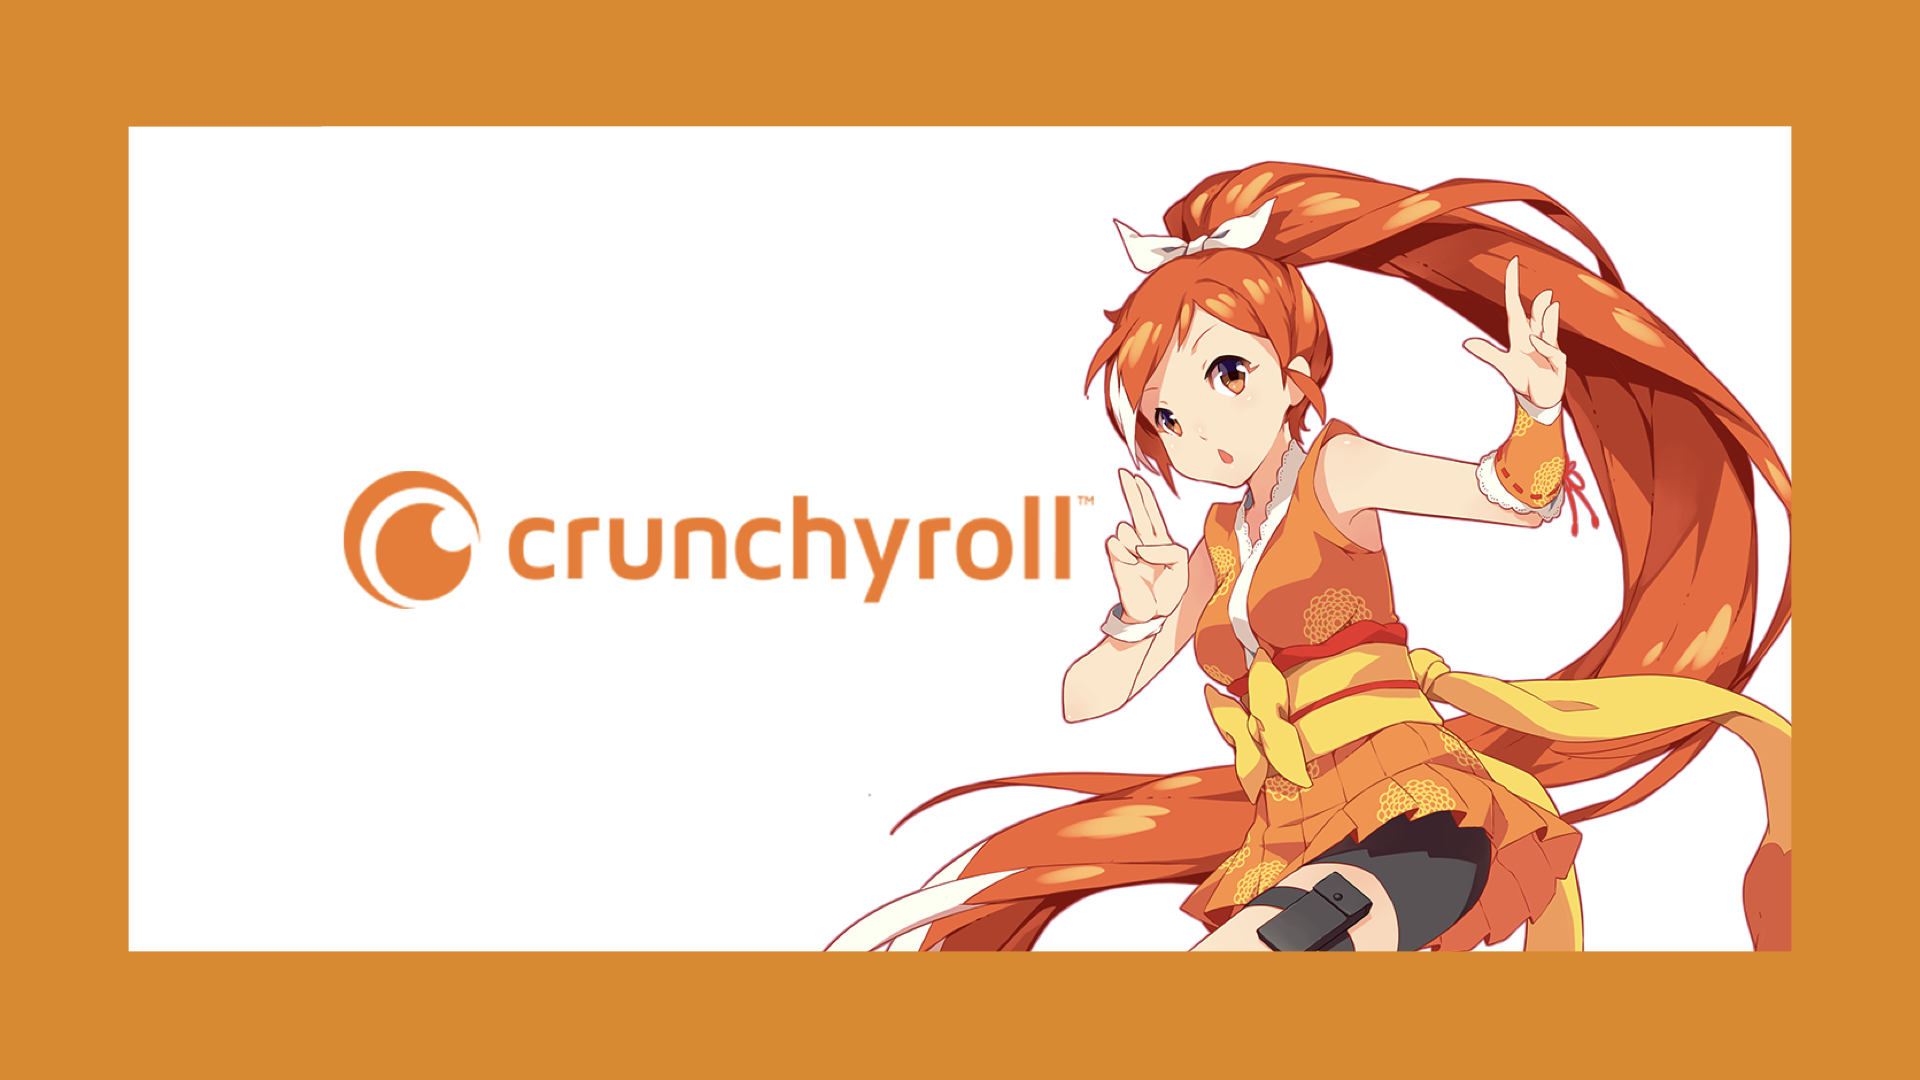 Crunchyroll, Funimation Merge Under Crunchyroll Brand 